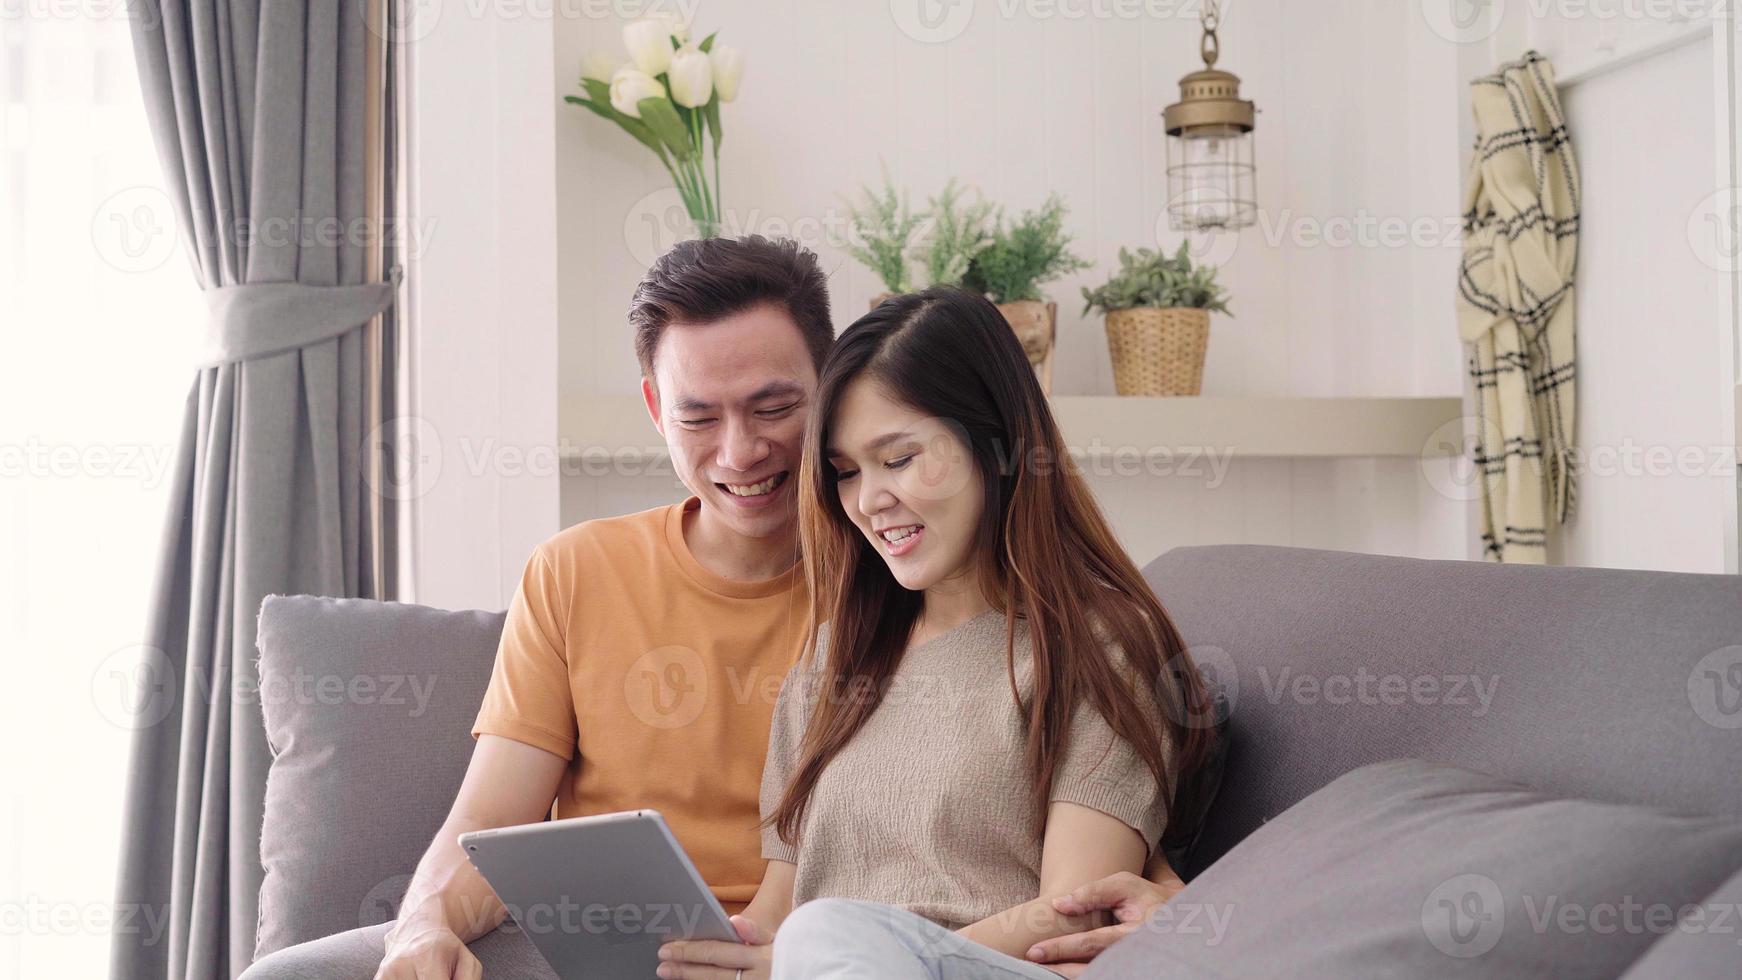 Felicidade casal de aposentados asiáticos gosta de jogar e competição jogo  smartphone móvel online juntos no sofá na sala de estar fundo interior de  casa casal asiático jogando jogo juntos em casa